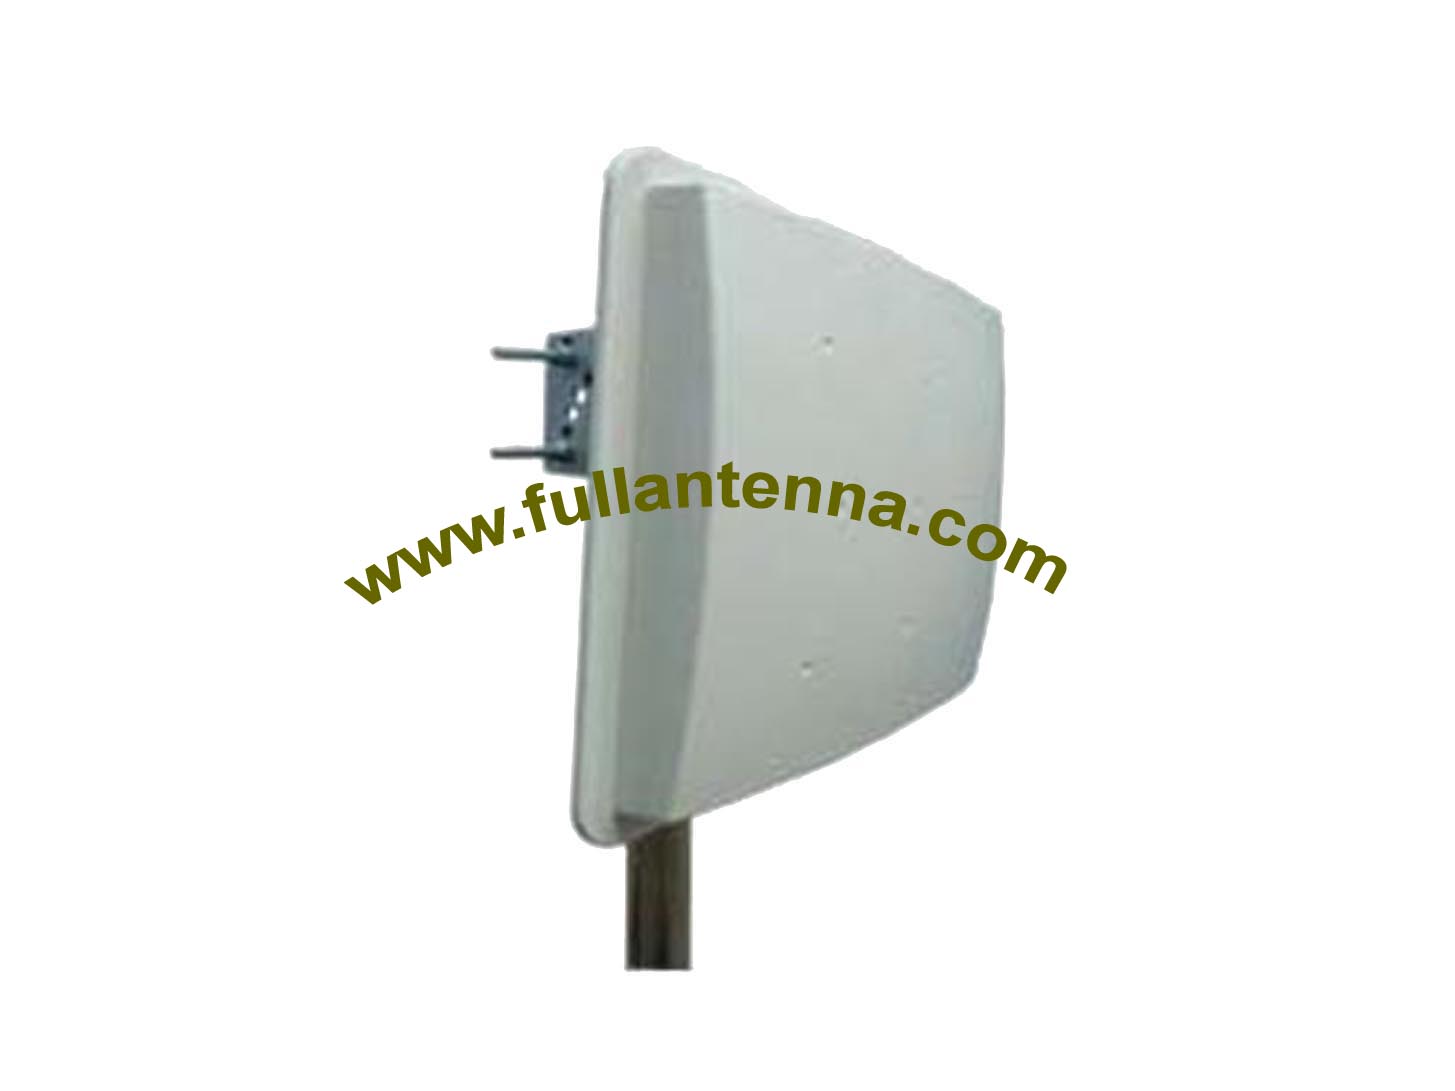 P / N: FA915.W08B, antena 915 MHz, łatka Antena RFID 8dbi Gain z uchwytem żeńskim N